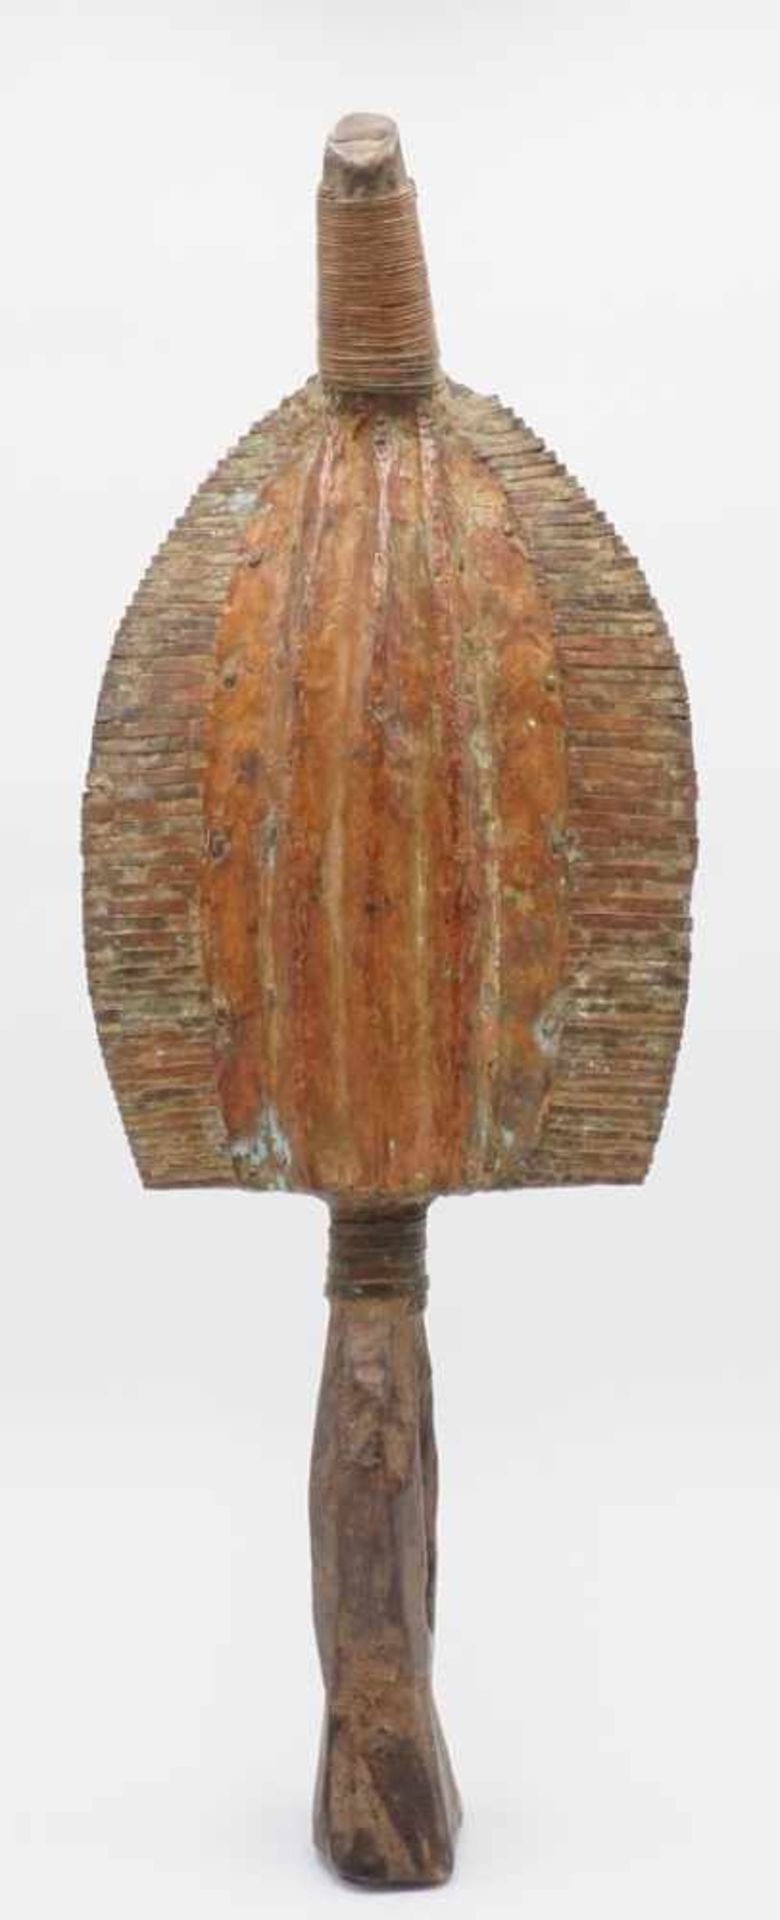 Kota Reliquiarfigur, GabunHolz, dunkelbraun, mit Kupferblech beschlagen, flaches, ovales Gesicht mit - Image 2 of 3